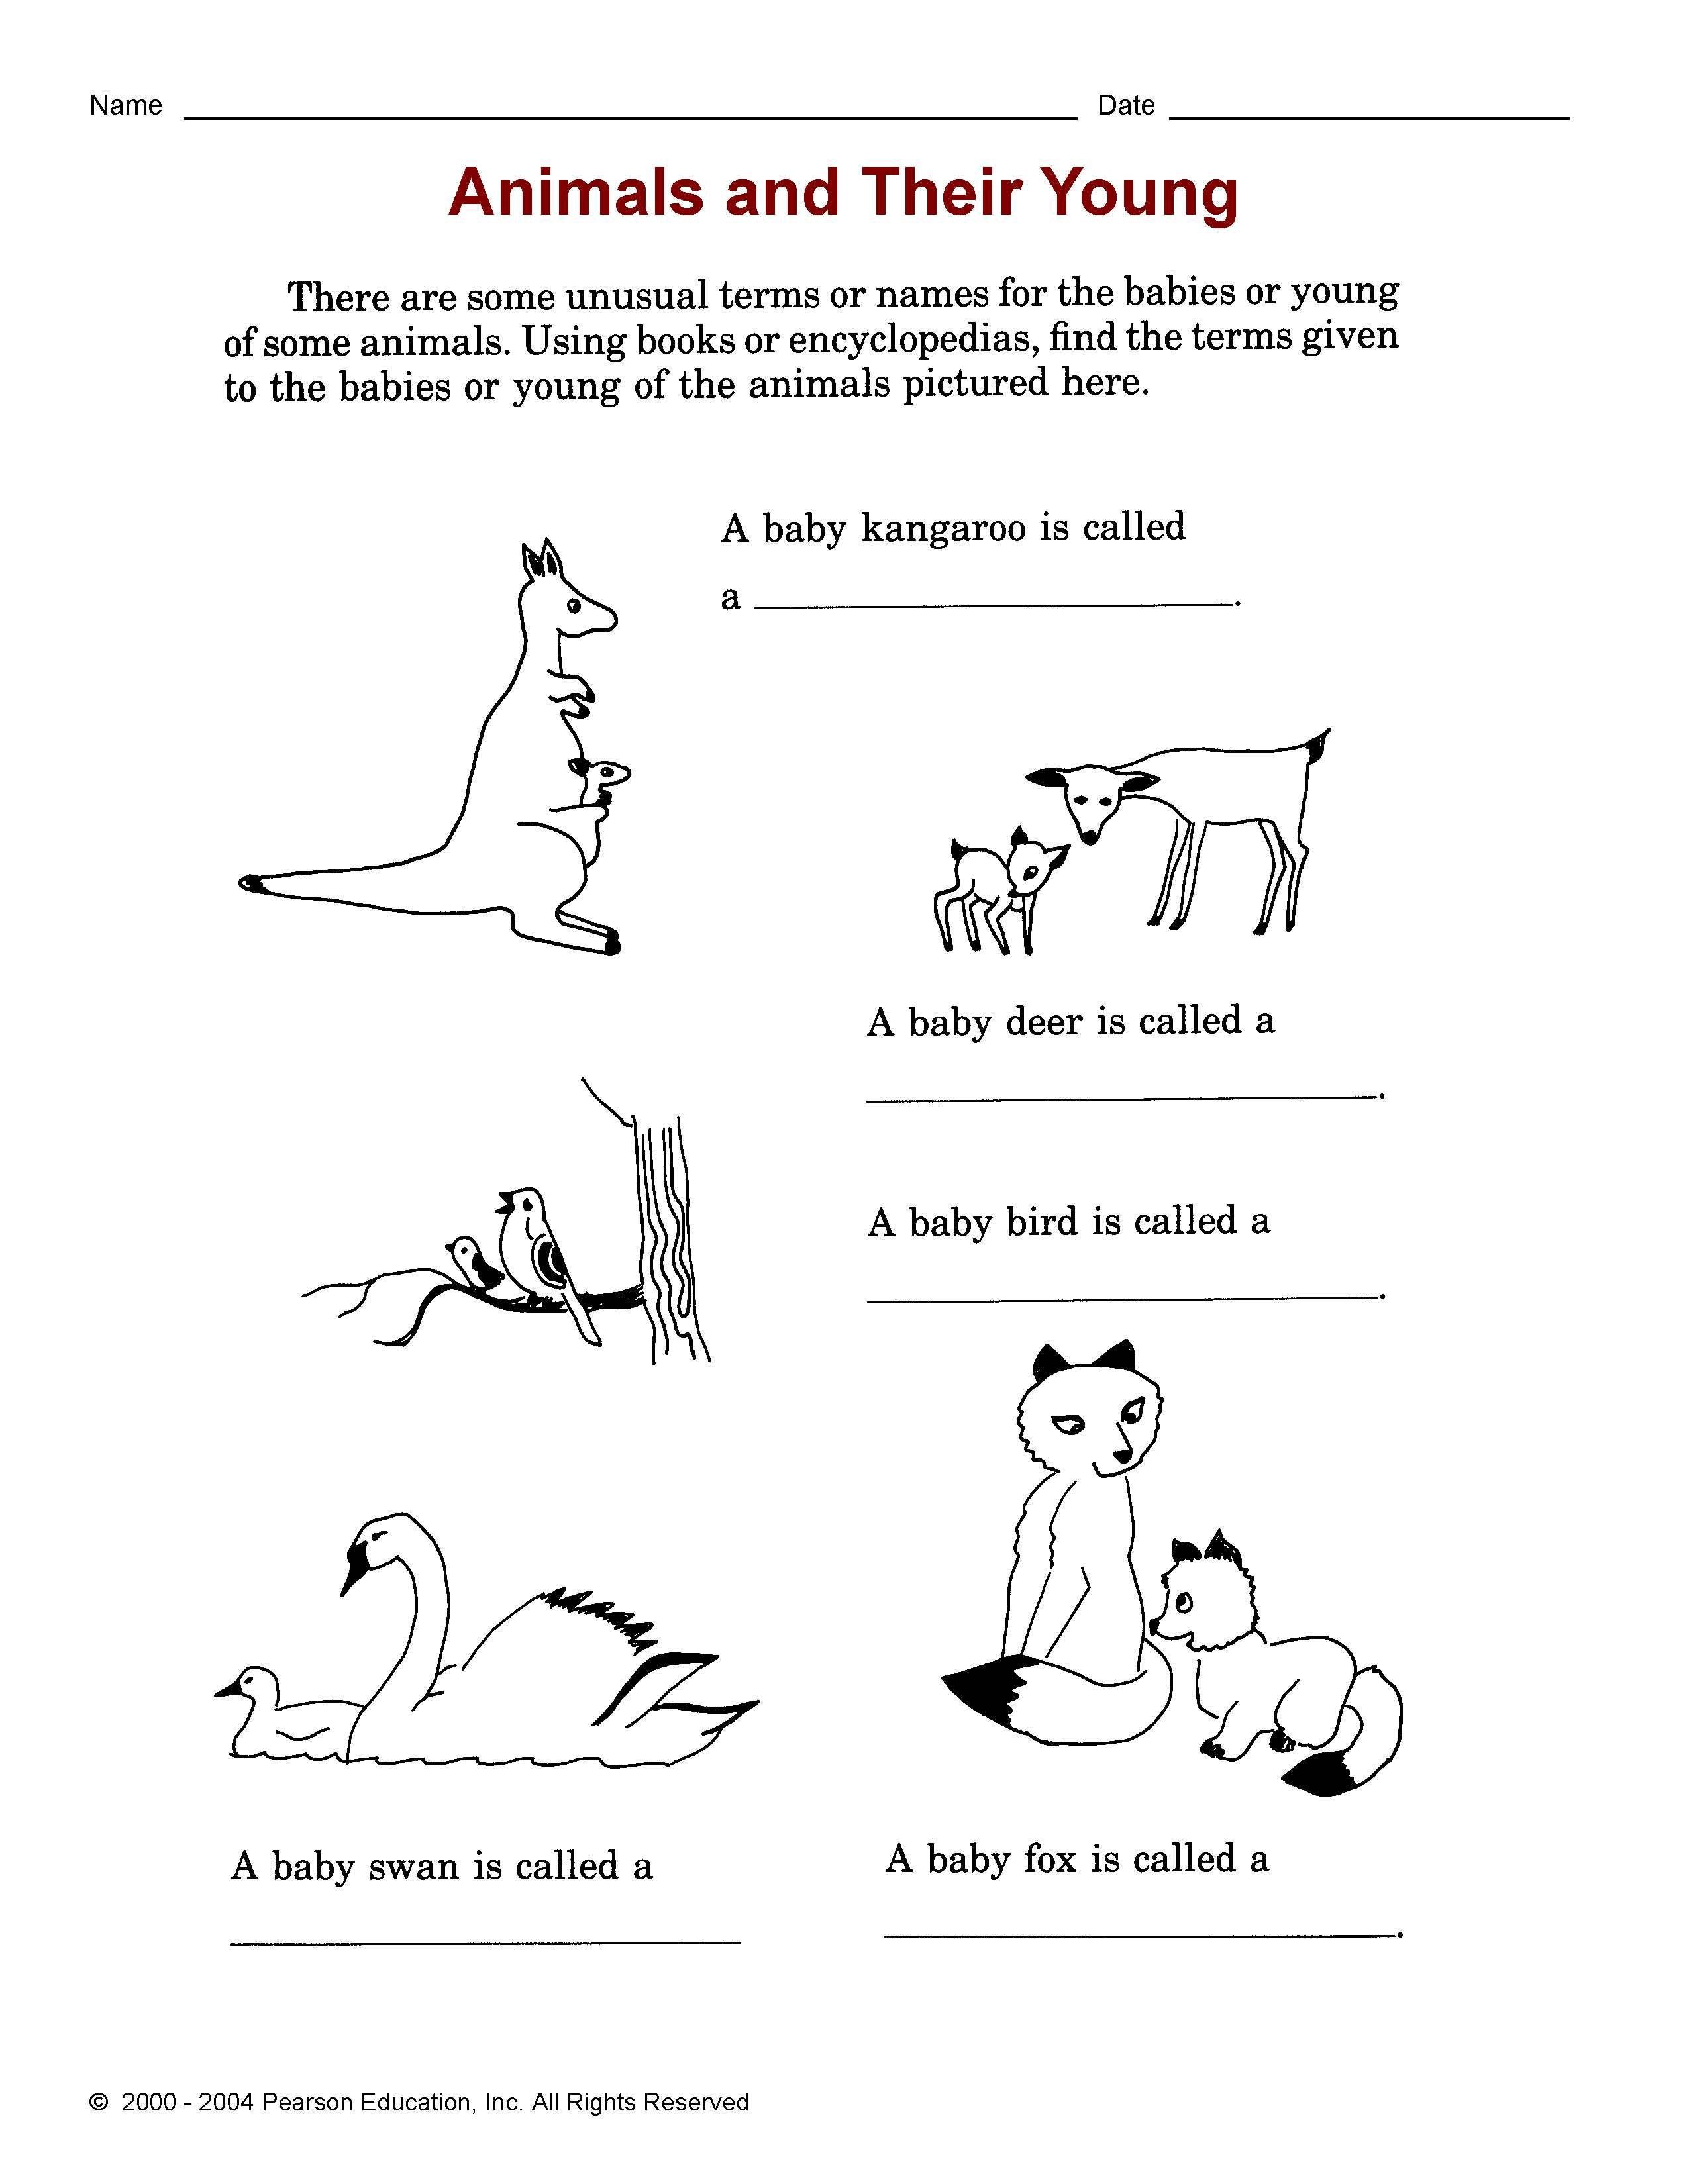 Текст про животных на английском языке для младших классов